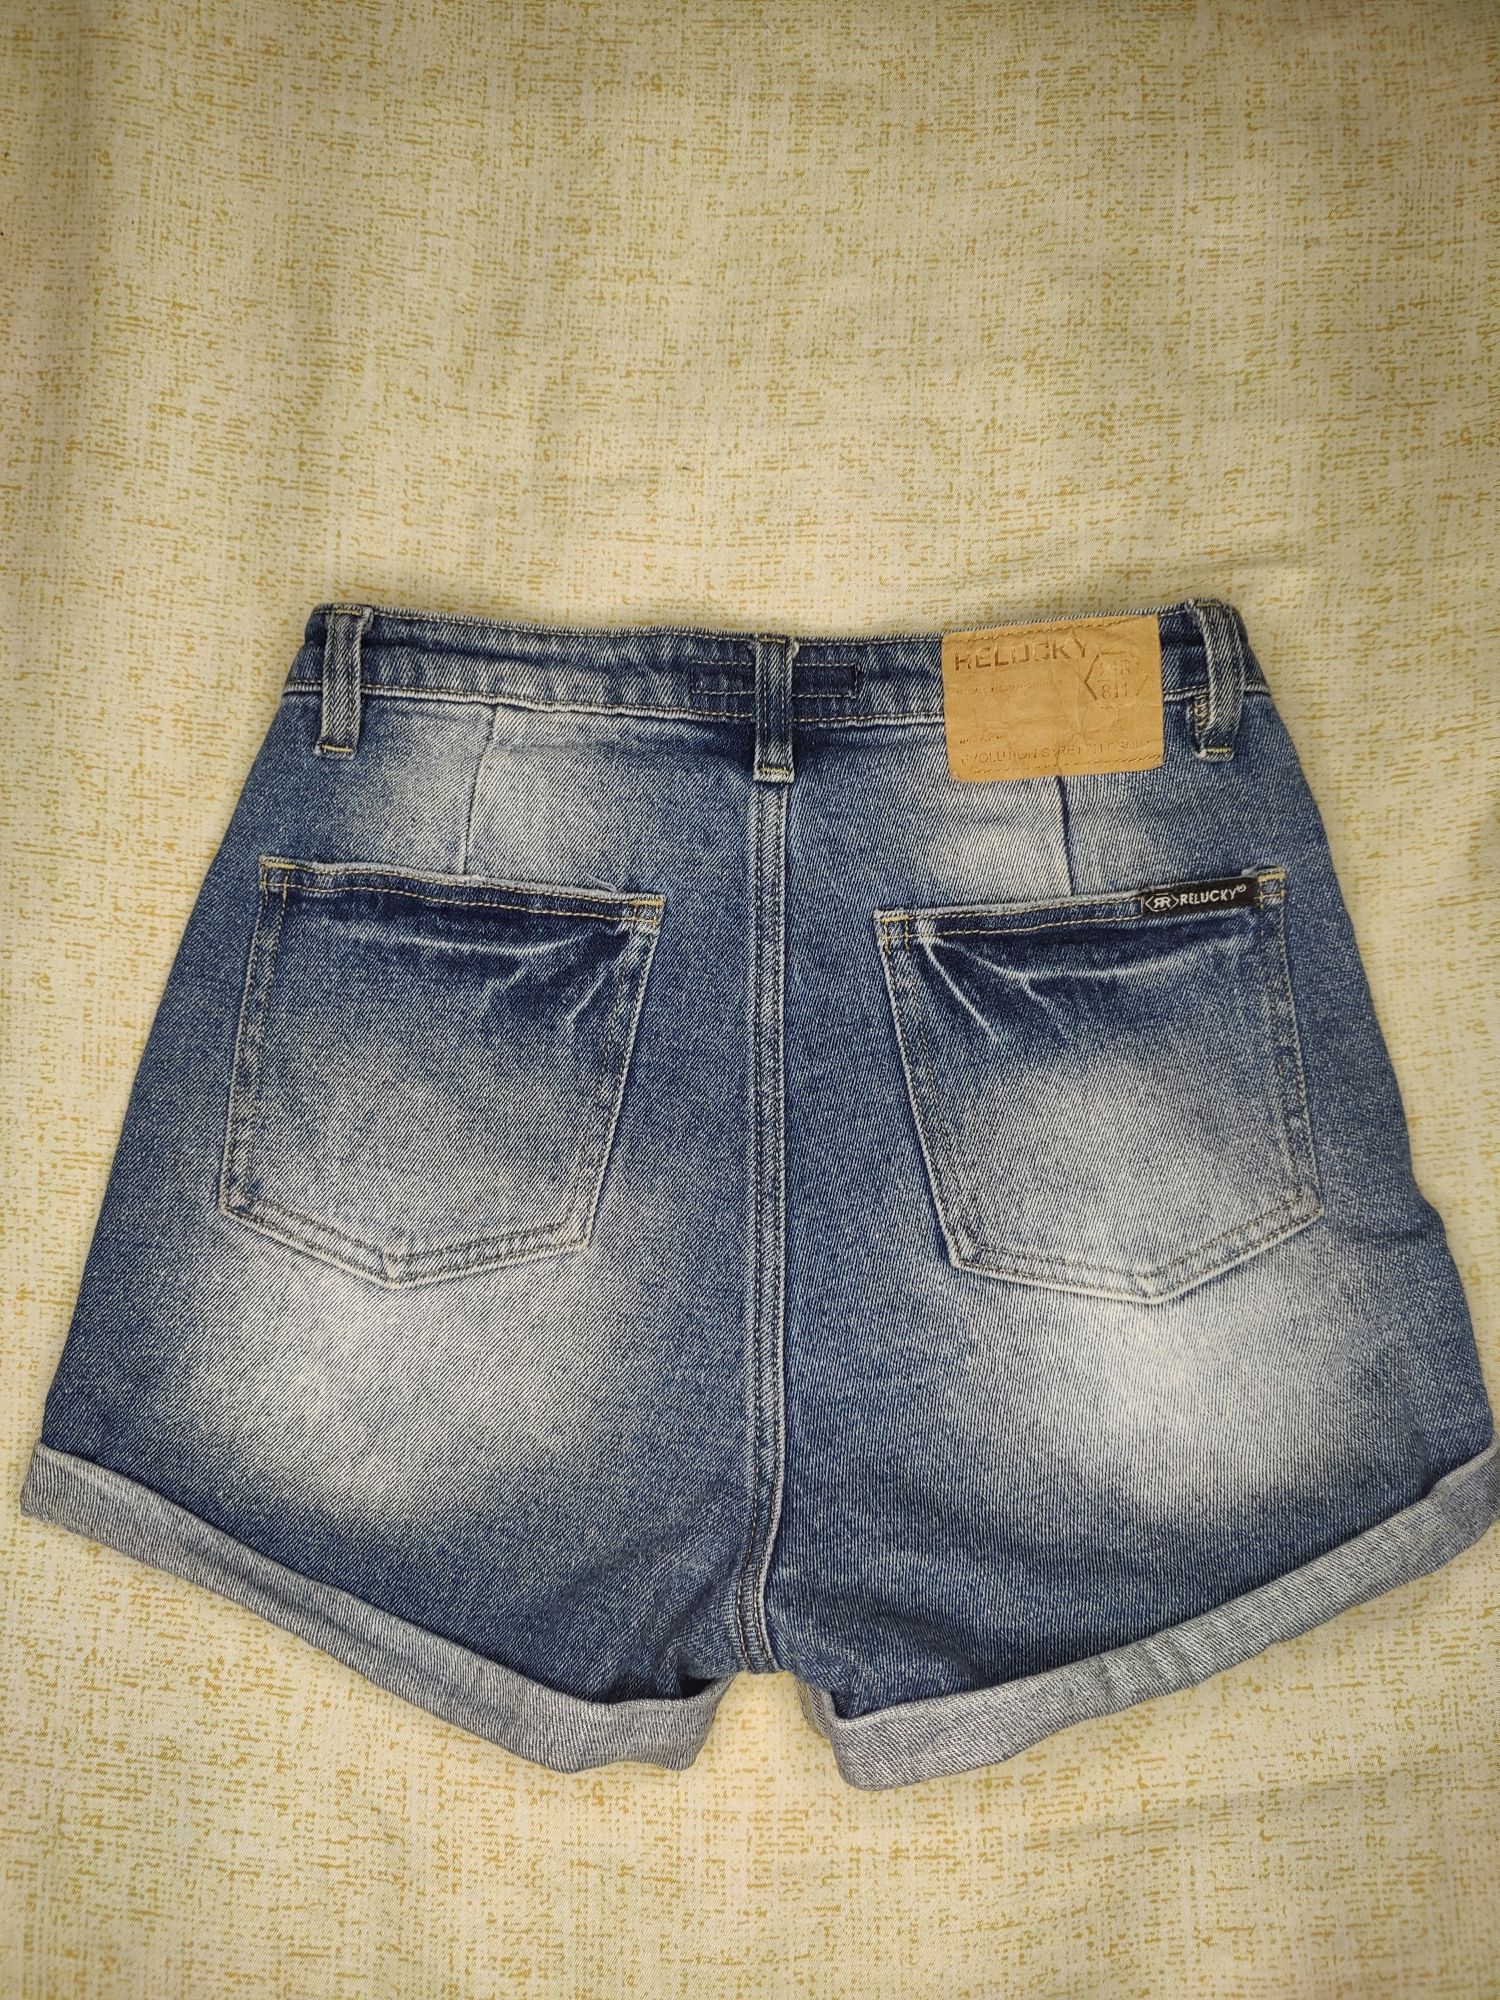 Шорты джинсовые размер 27 С-М, S,.